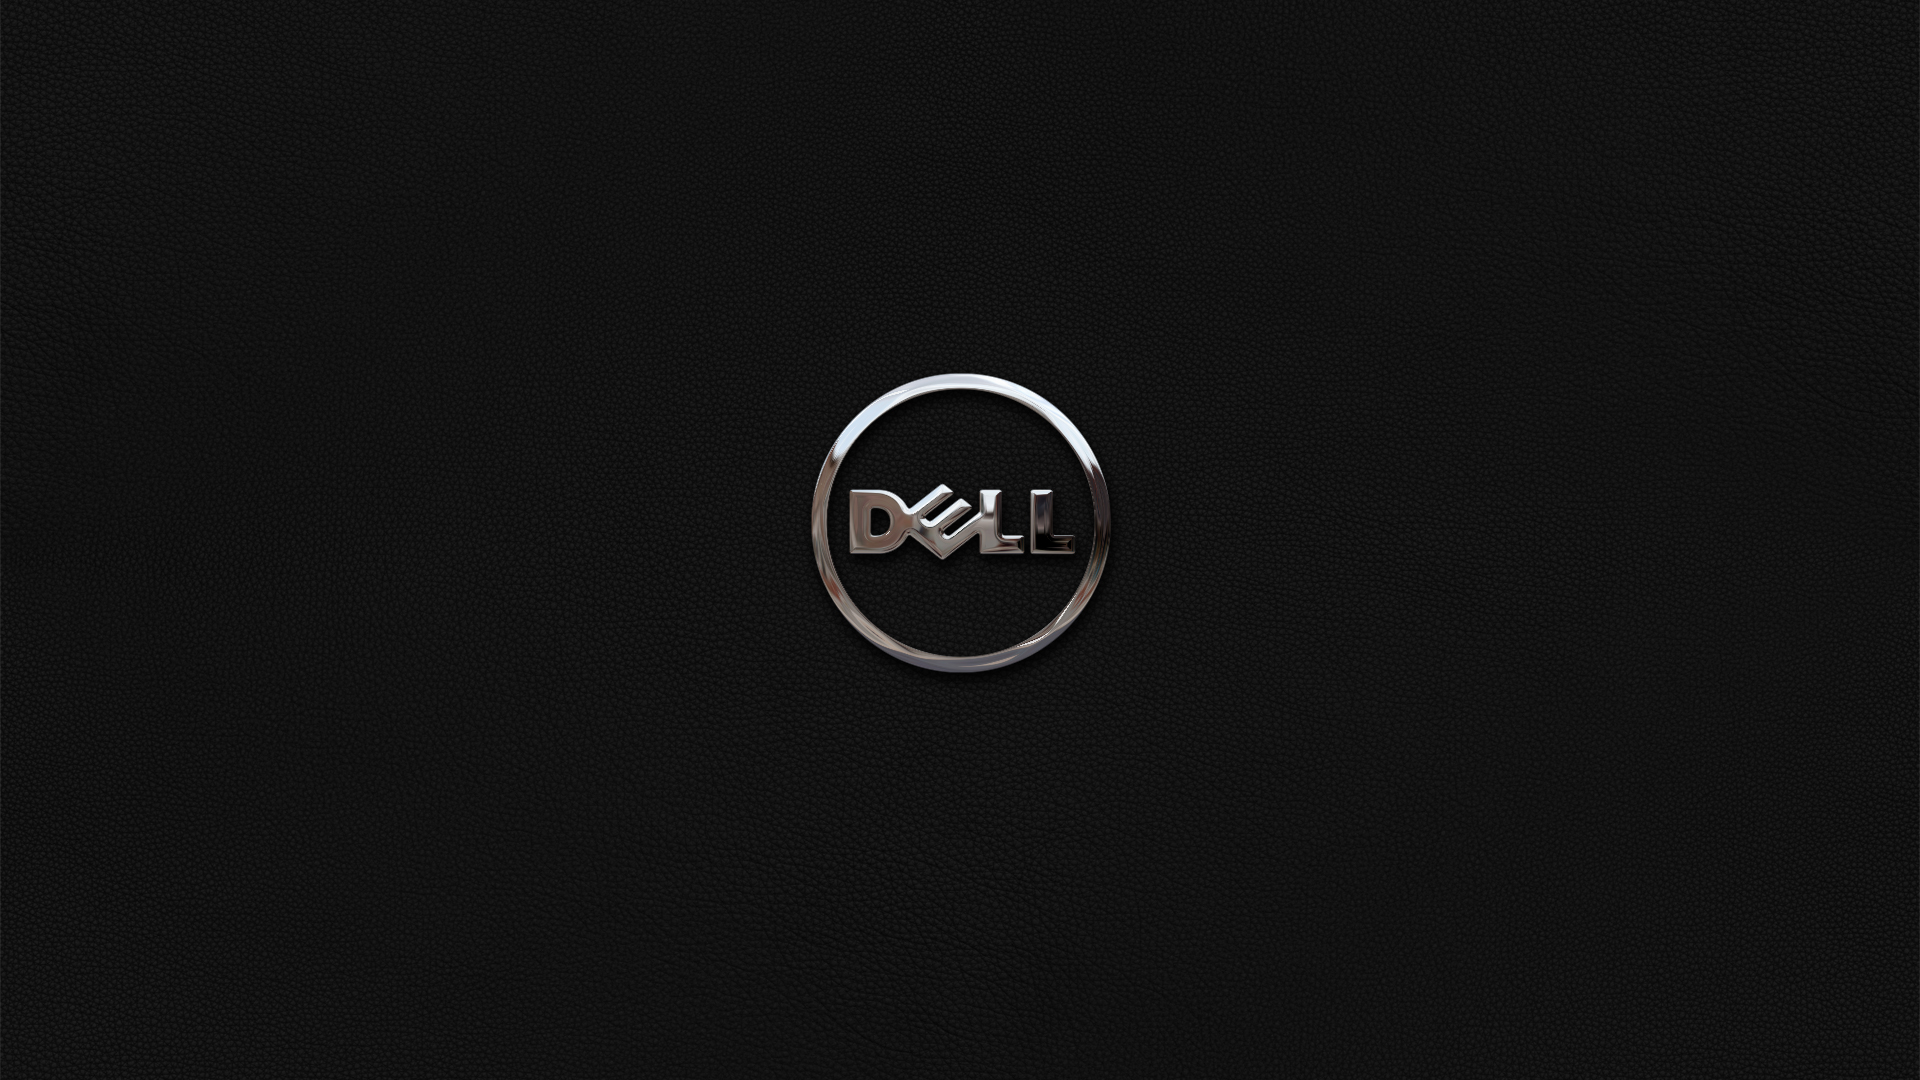 Dell Dark Background Simple Background Logo Minimalism 1920x1080